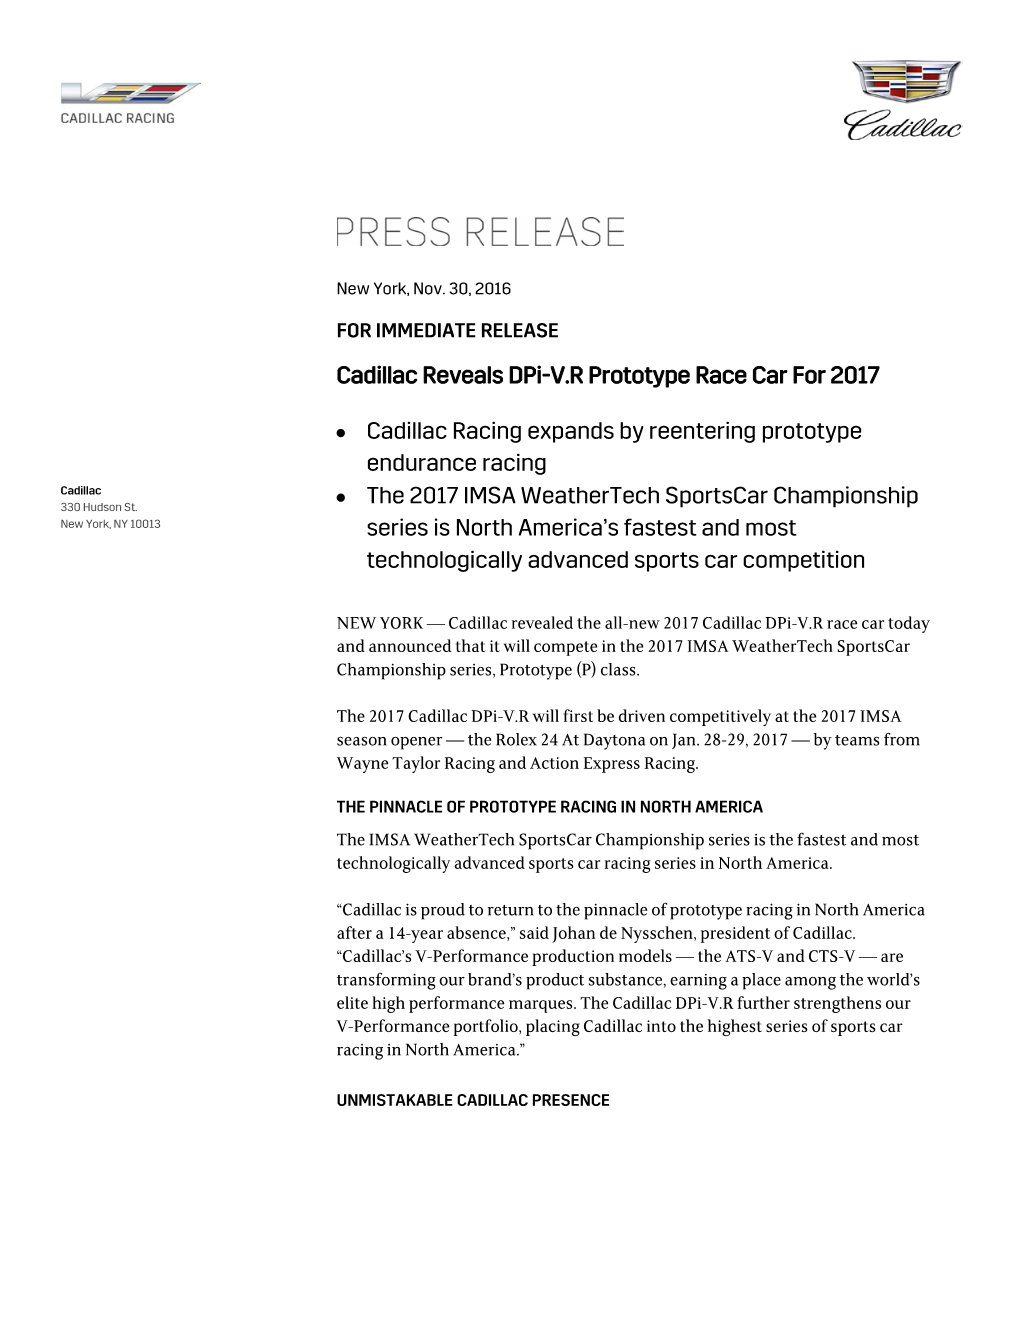 Cadillac Reveals Dpi-V.R Prototype Race Car for 2017 • Cadillac